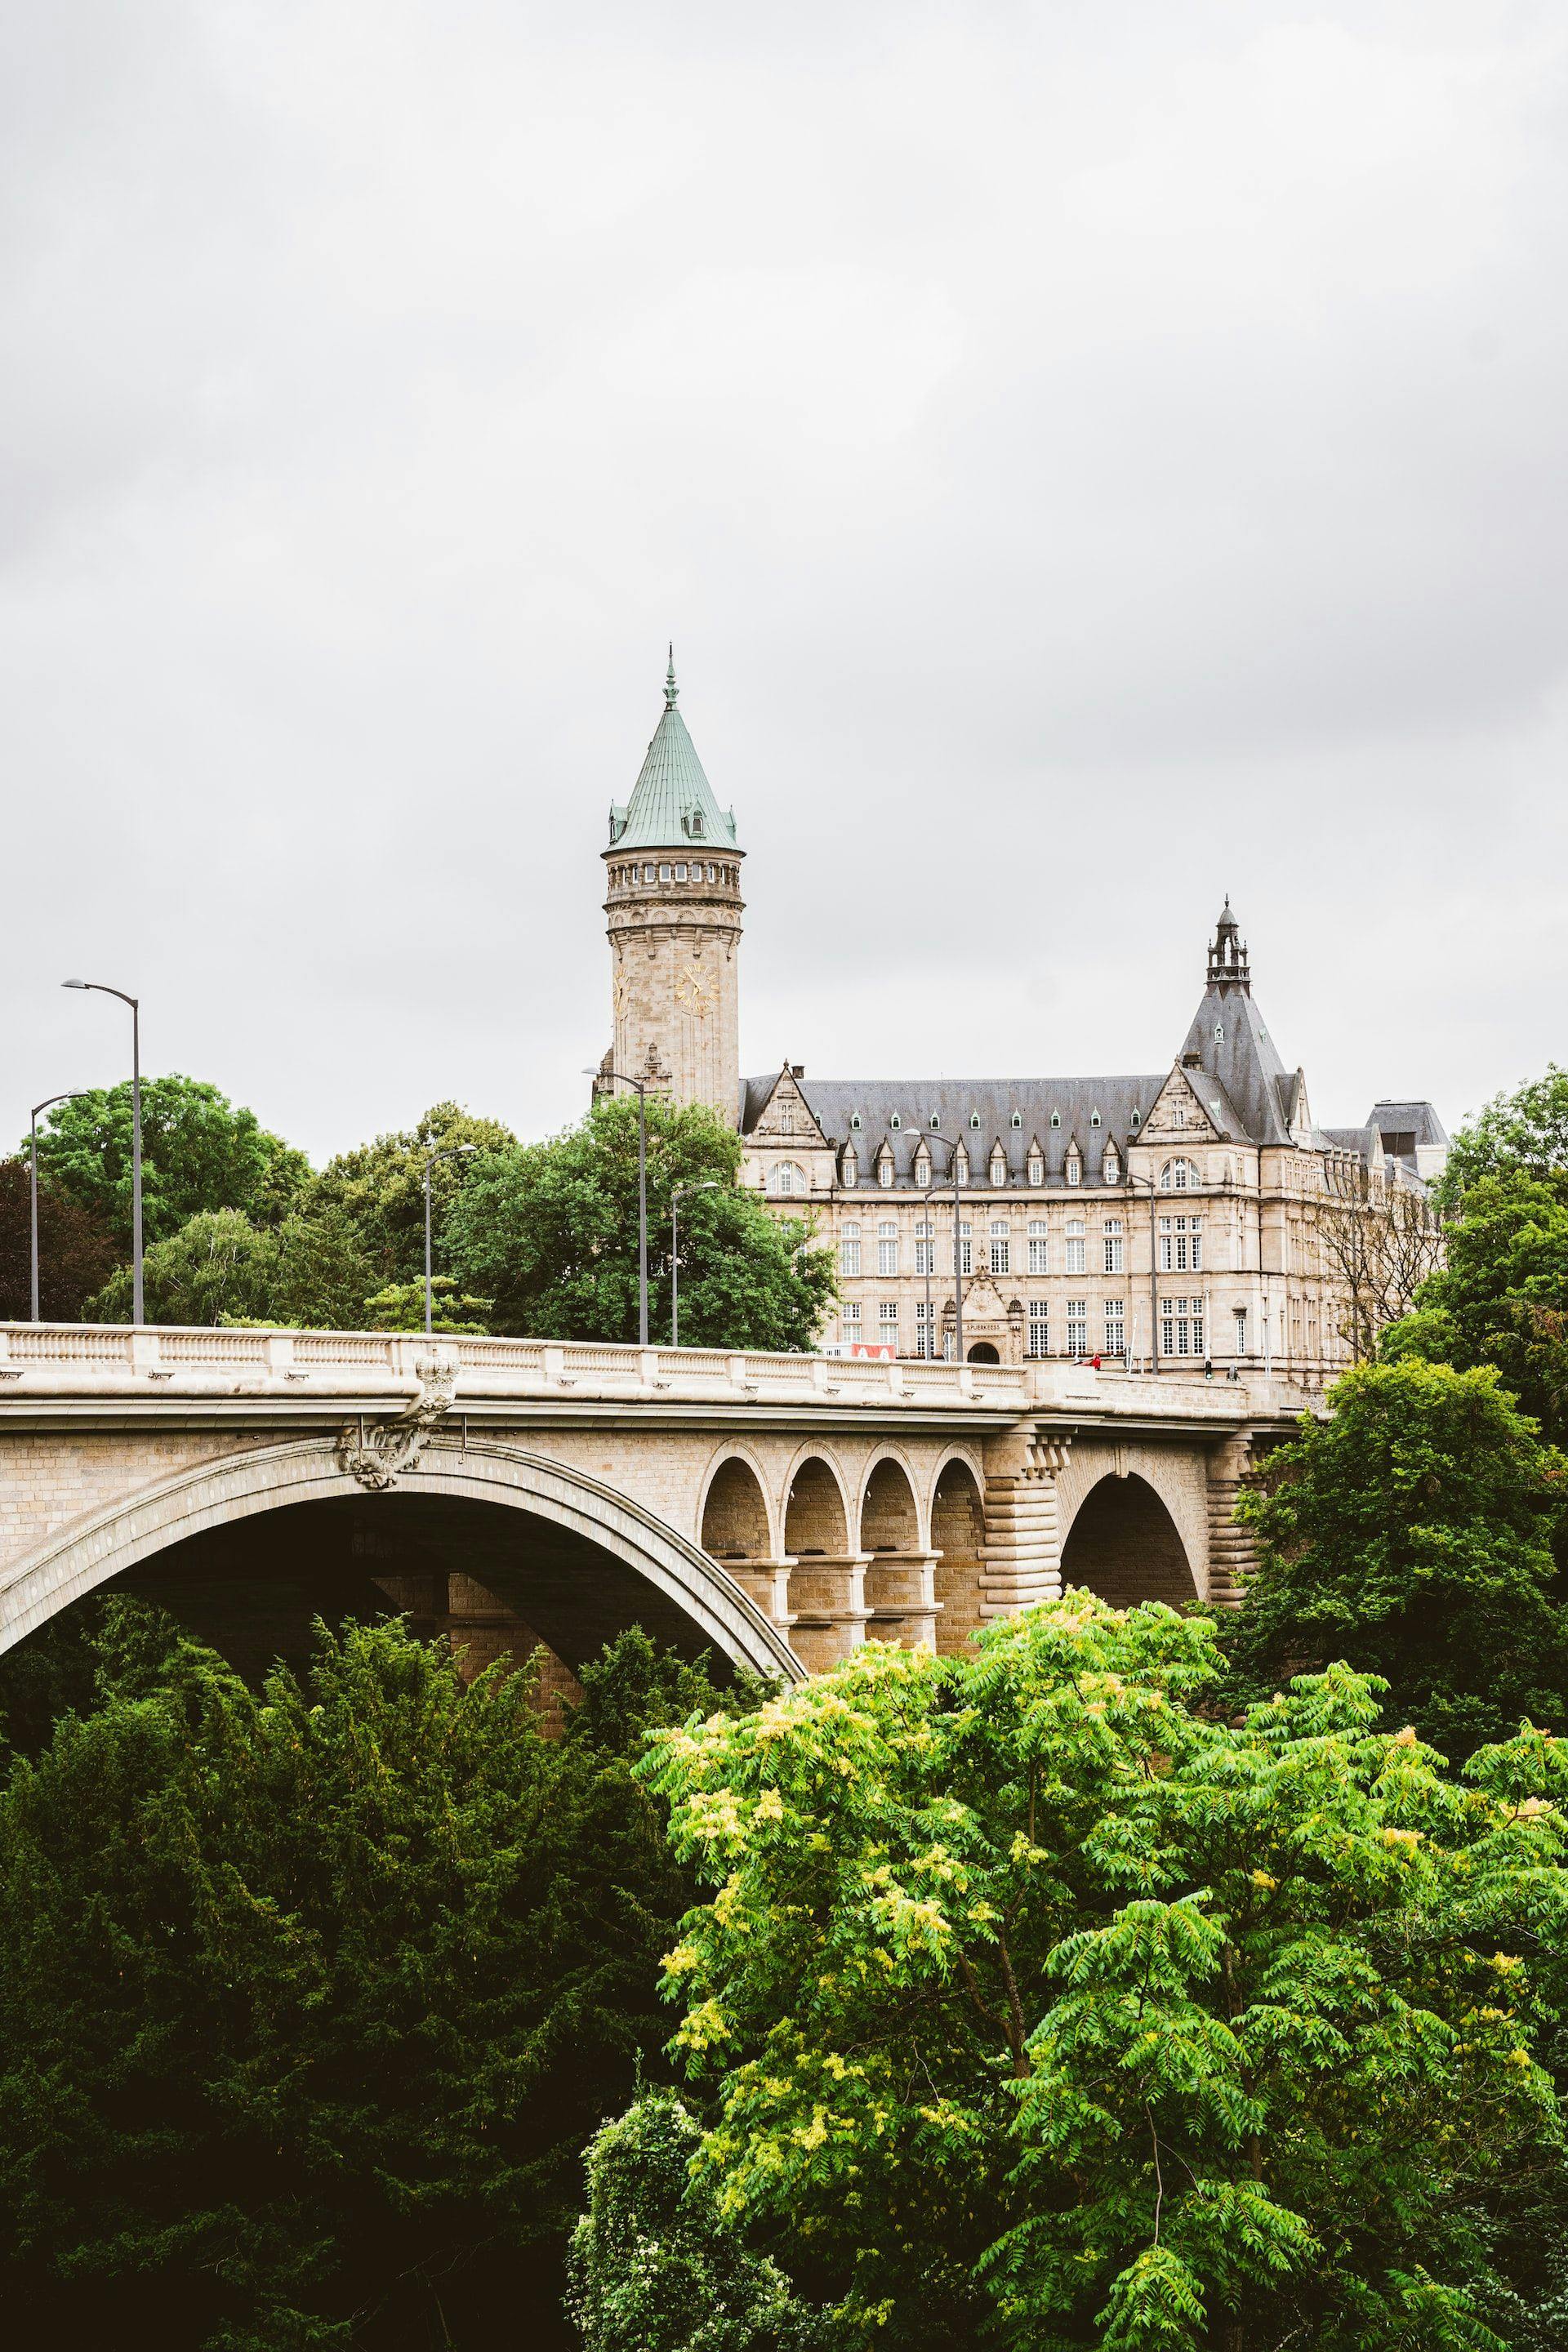 Бесплатная экскурсия по достопримечательностям Люксембурга пройдёт в сентябре